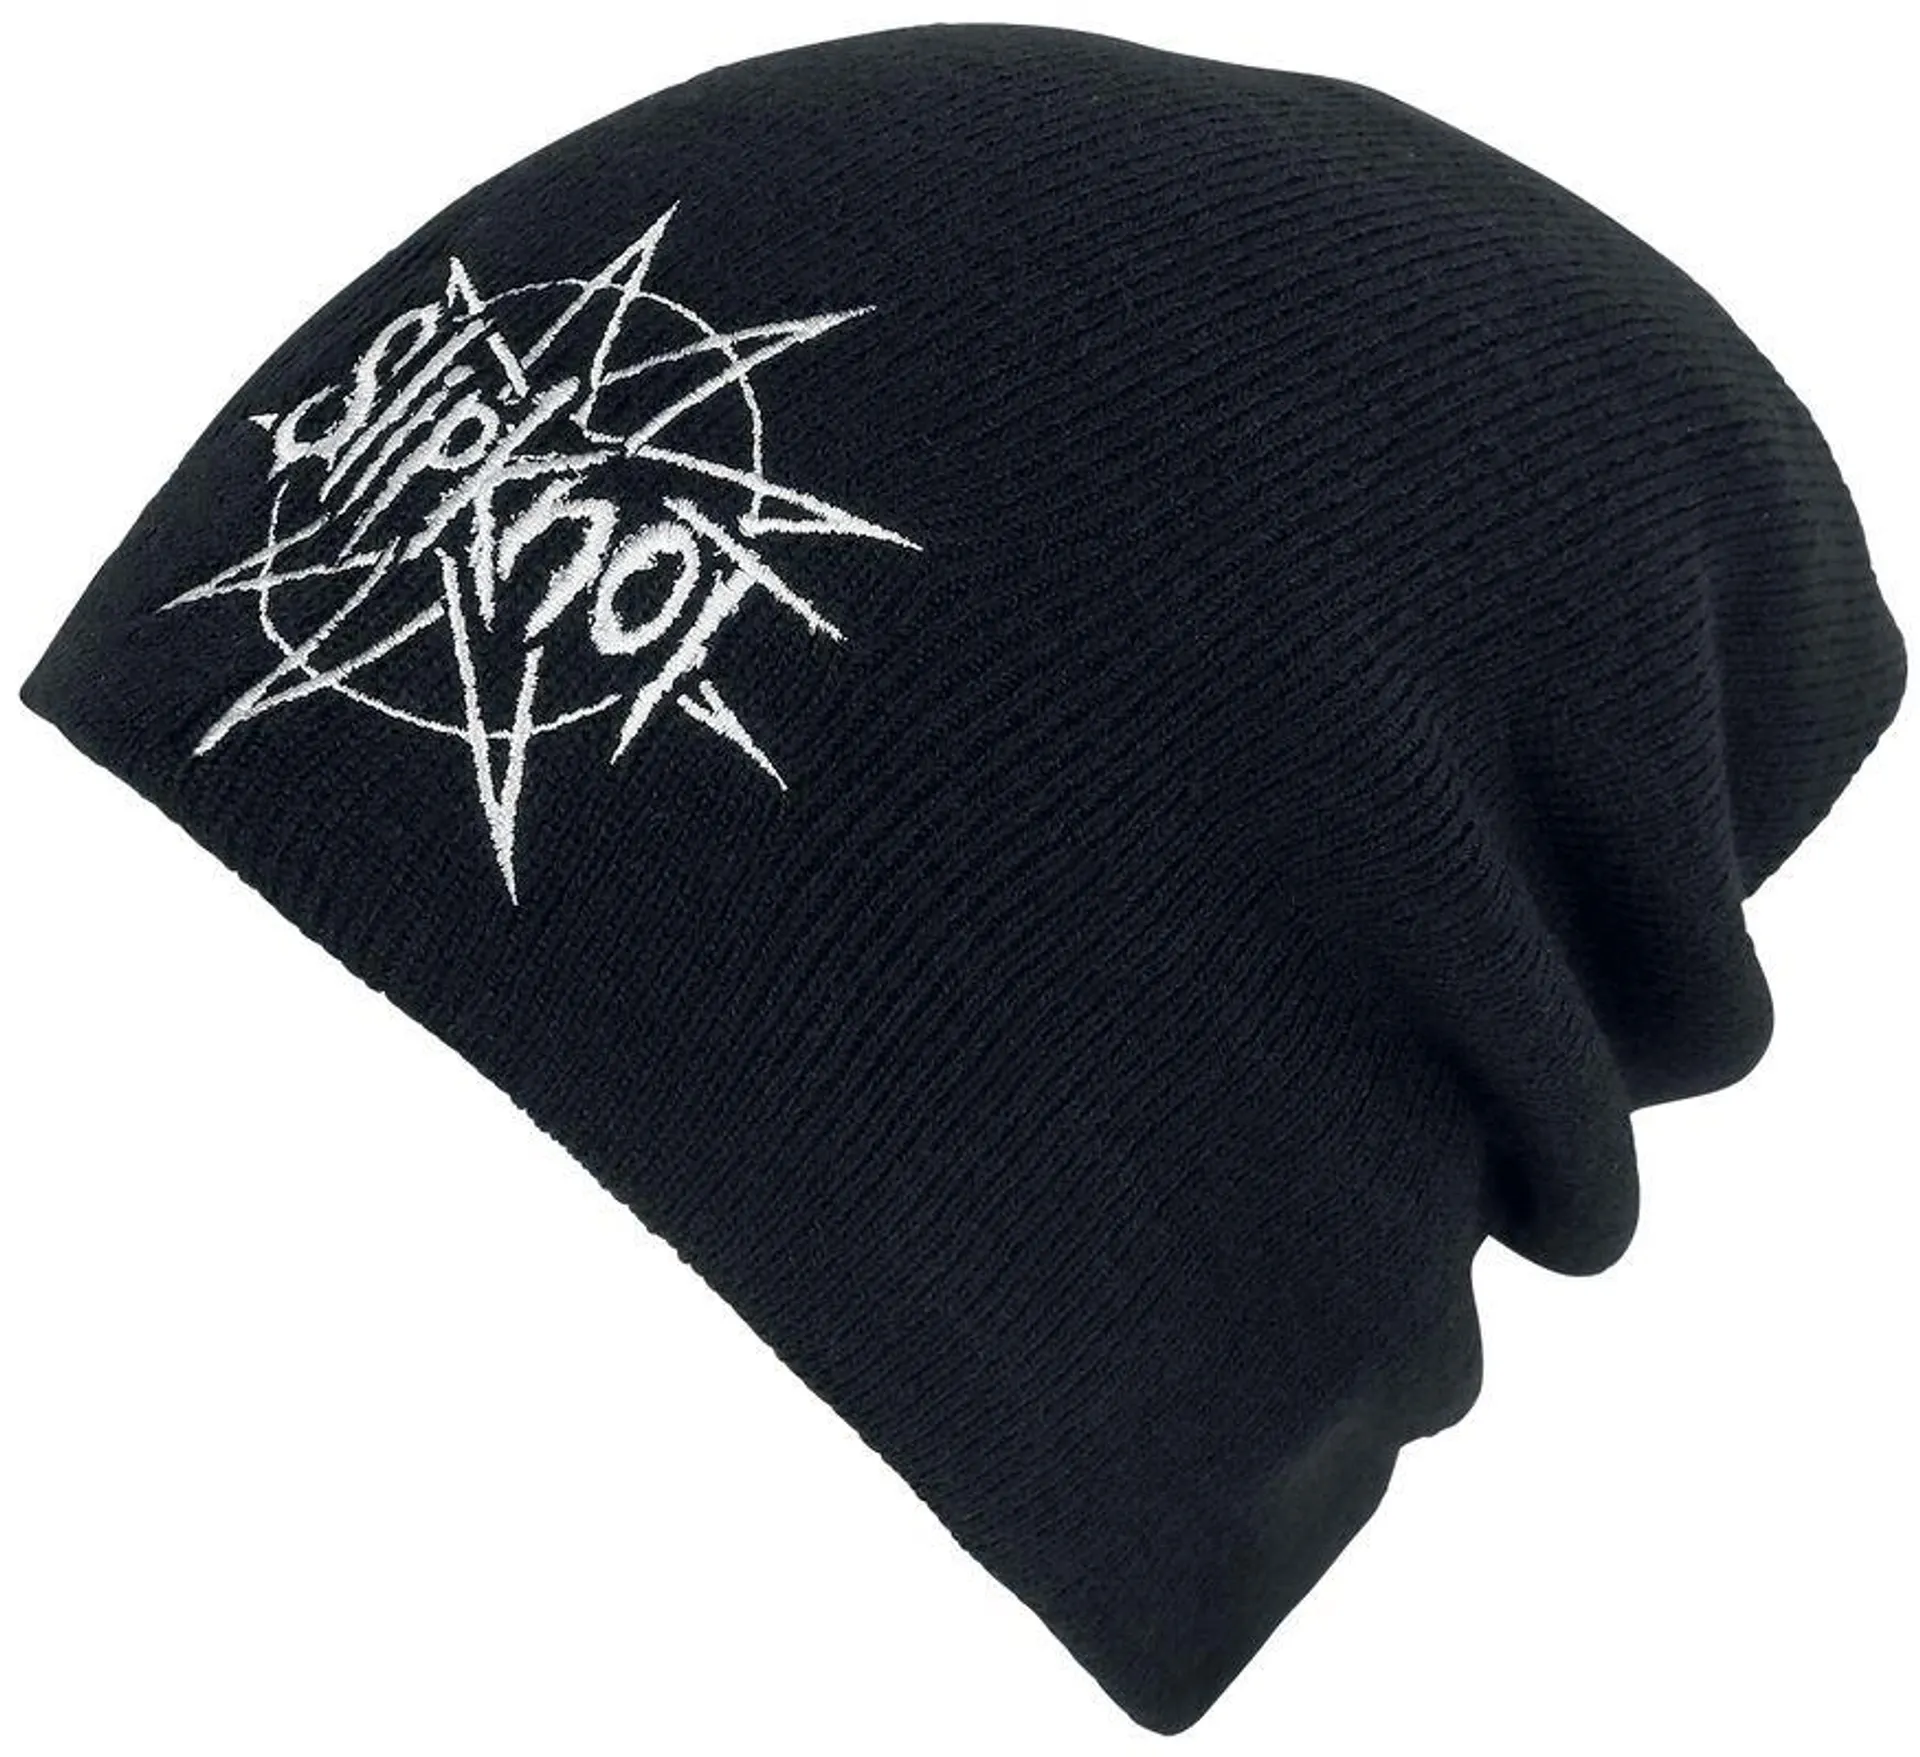 "Logo" Mütze schwarz von Slipknot